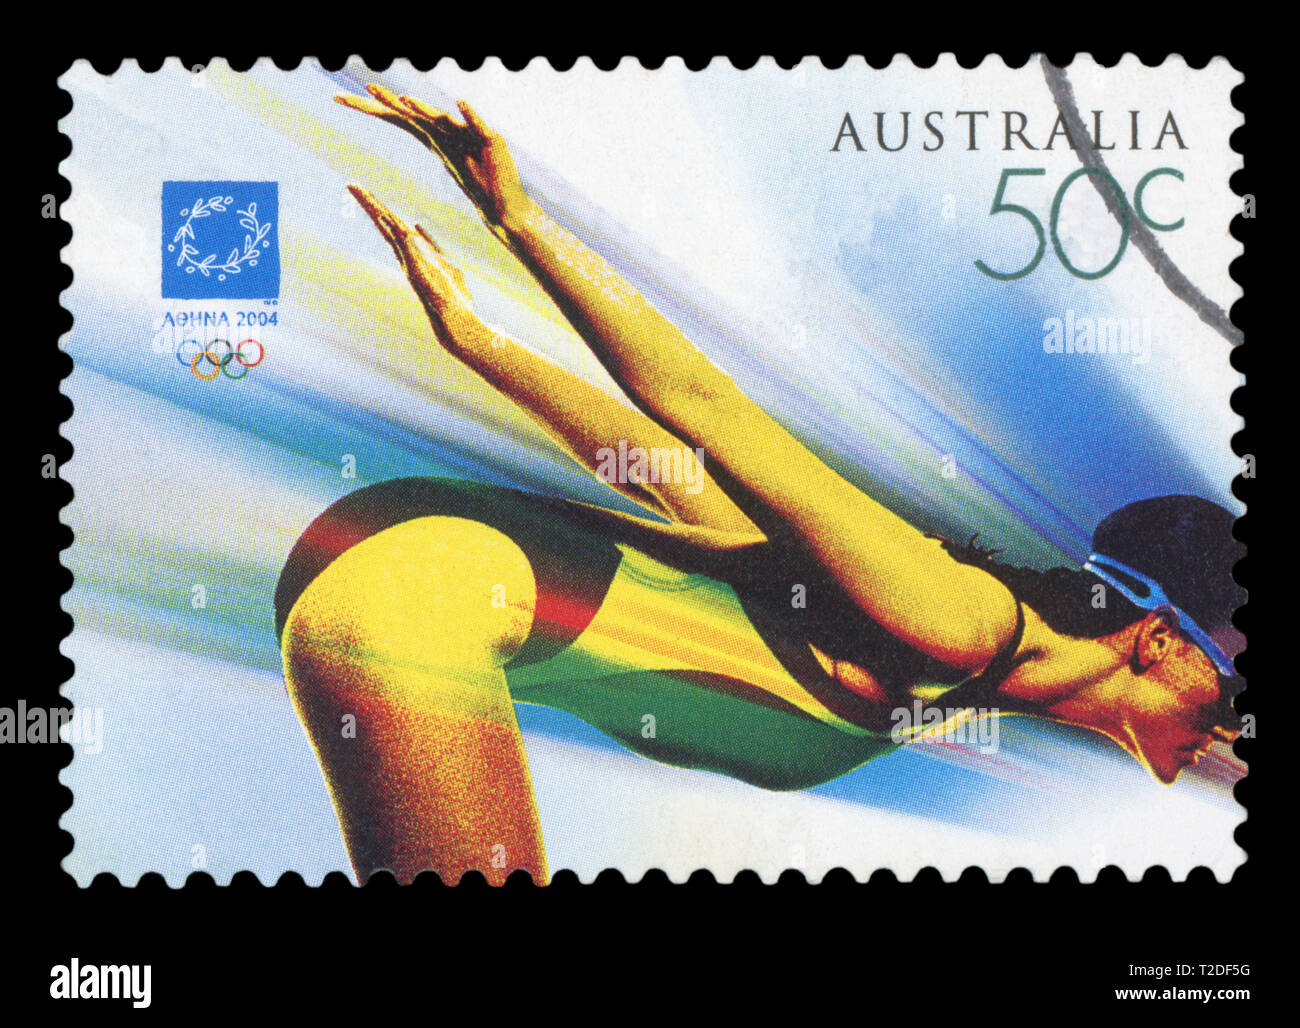 L'AUSTRALIE - circa 2004 : un timbre-poste utilisé à partir de l'Australie, symbolisant l'épreuve de natation au Jeux Olympiques d'été de 2004 à Athènes, vers 2004. Banque D'Images